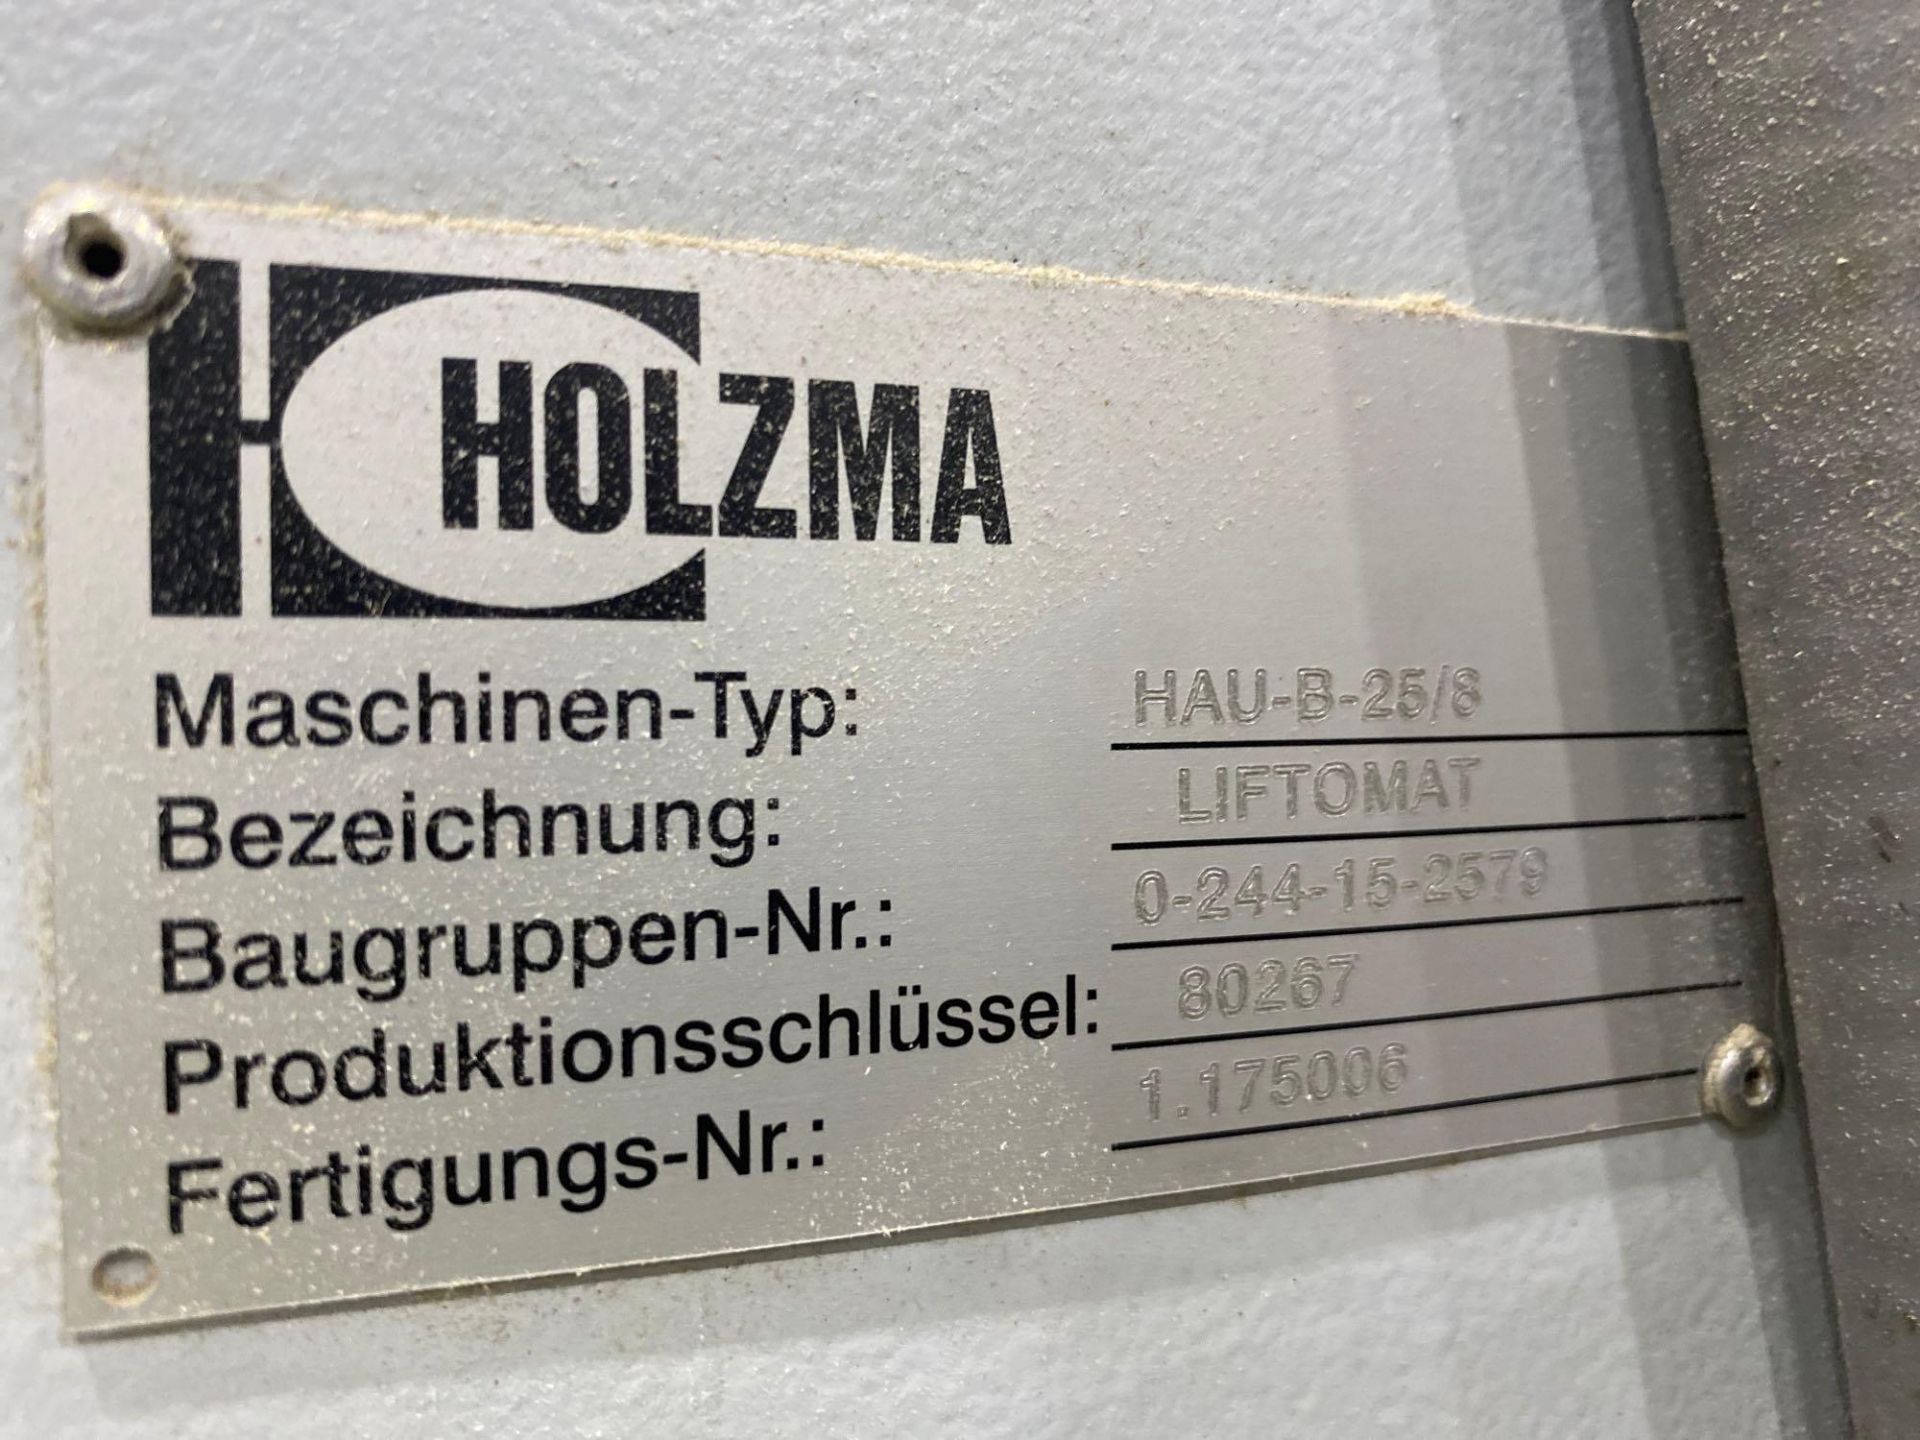 Lot Holzma liftomat HAU-A-25/8 - Image 10 of 14